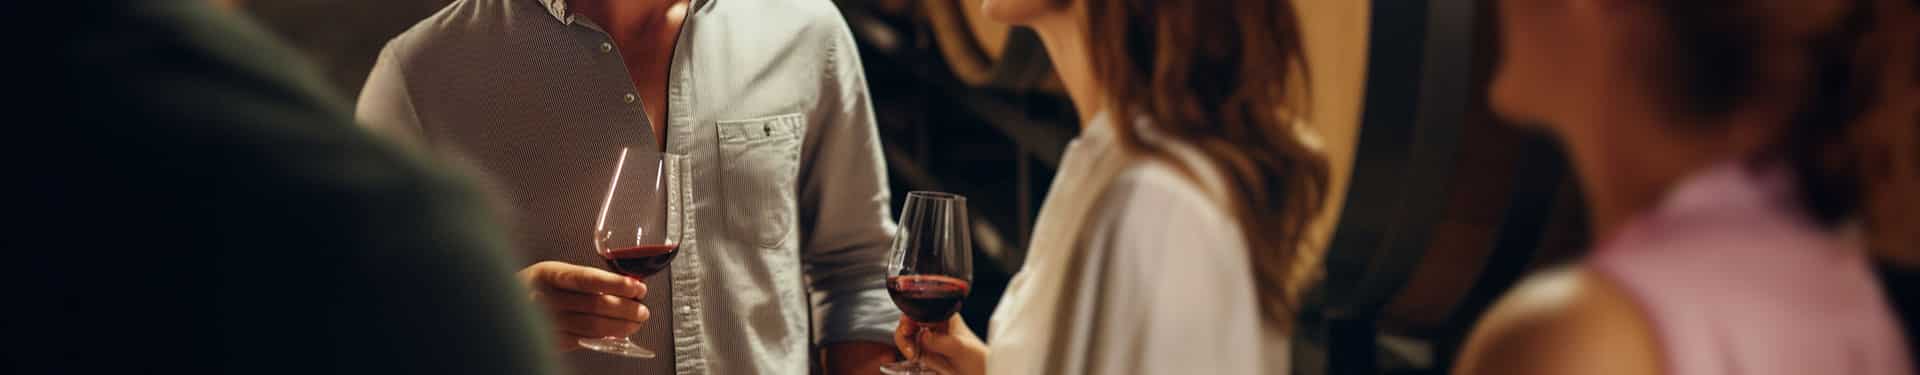 Un homme et une femme tiennent des verres de vin rouge dans leur main.